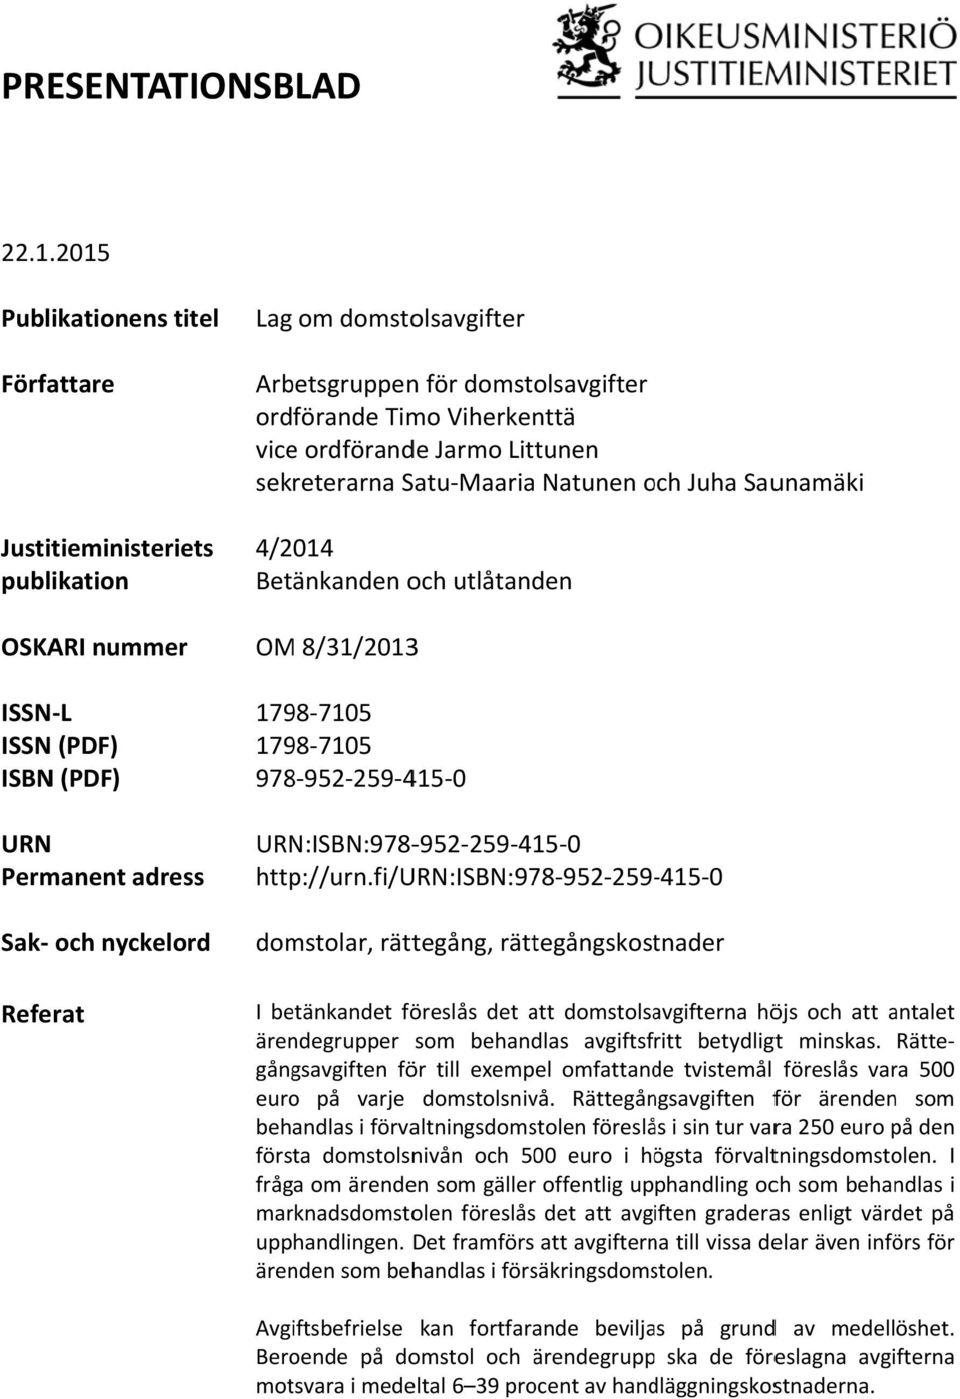 Juha Saunamäki Justitieministeriets 4/2014 publikation Betänkanden och utlåtanden OSKARI nummer ISSN L ISSN (PDF) ISBN (PDF) URN Permanent adress Sak och nyckelord Referat OM 8/31/20133 1798 7105